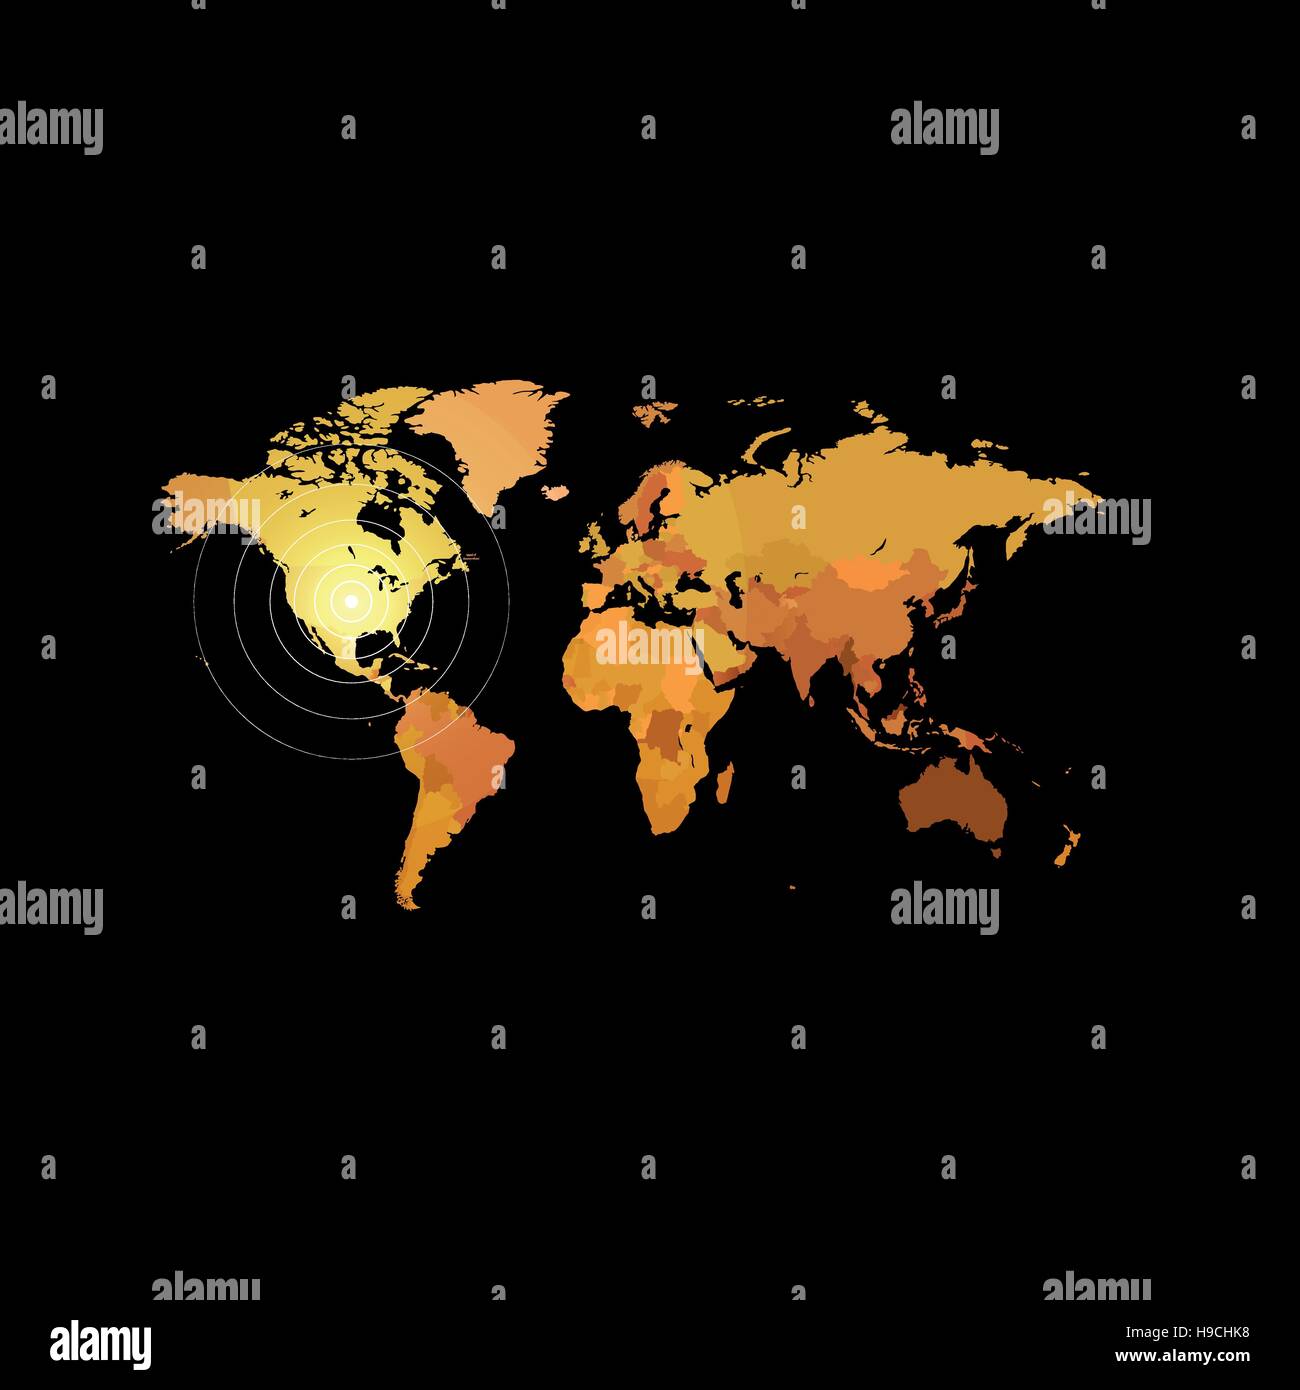 Carte du monde de couleur orange sur fond noir. Globe design toile de fond. L'élément de la cartographie papier peint. L'emplacement géographique de l'image. Illustration vecteur de continents. Illustration de Vecteur